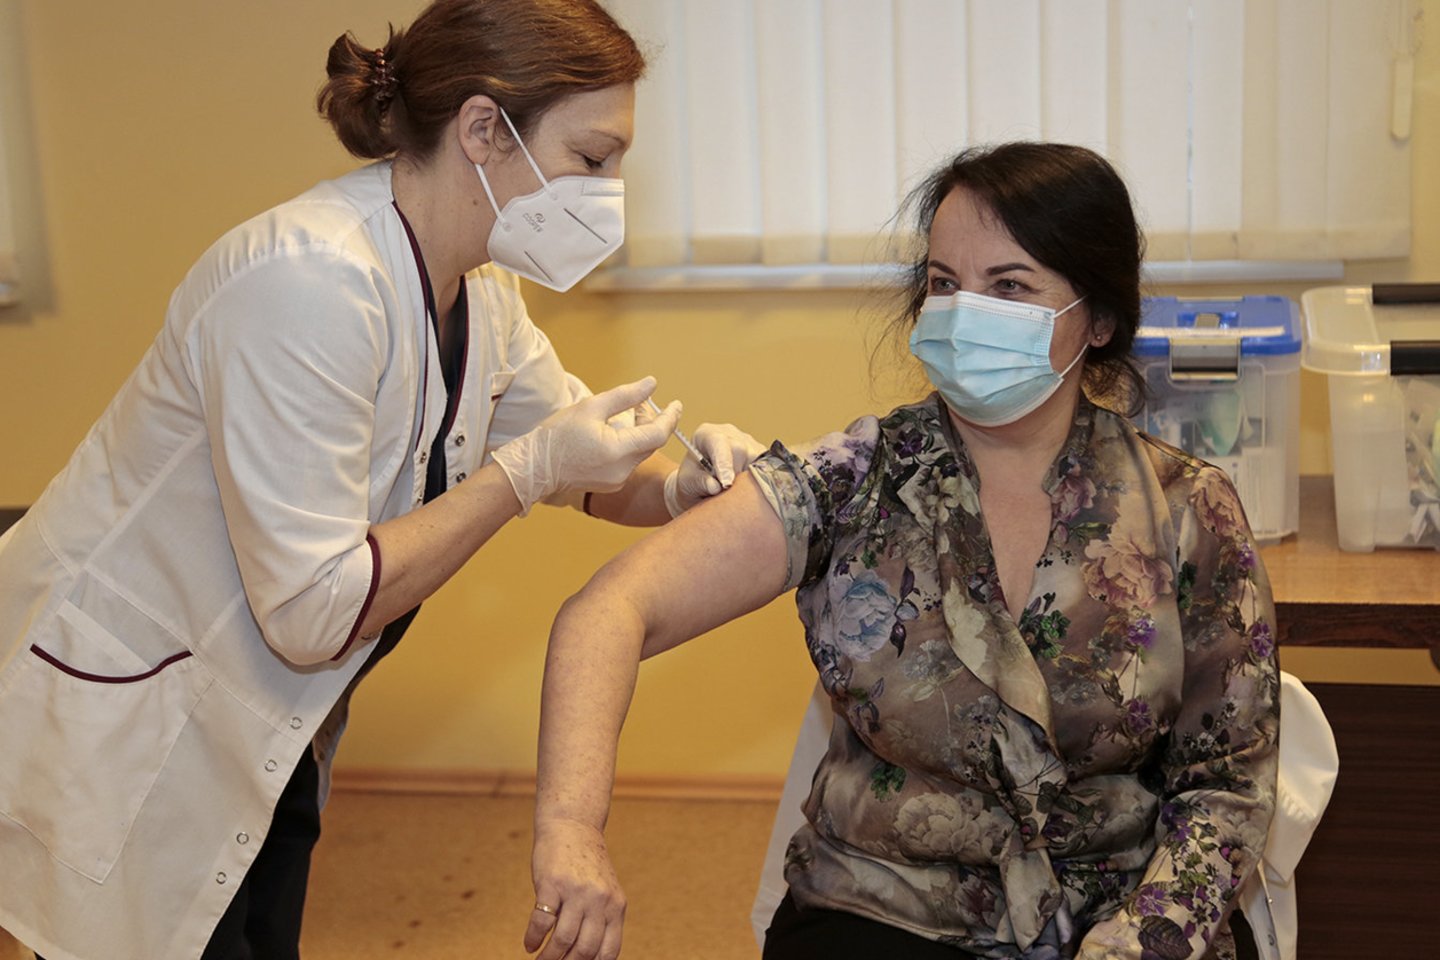 Pirmadienis Marijampolės ligoninėje neeilinė diena, pradėta darbuotojų vakcinacija nuo koronaviruso.<br>R.Pasiliausko nuotr.